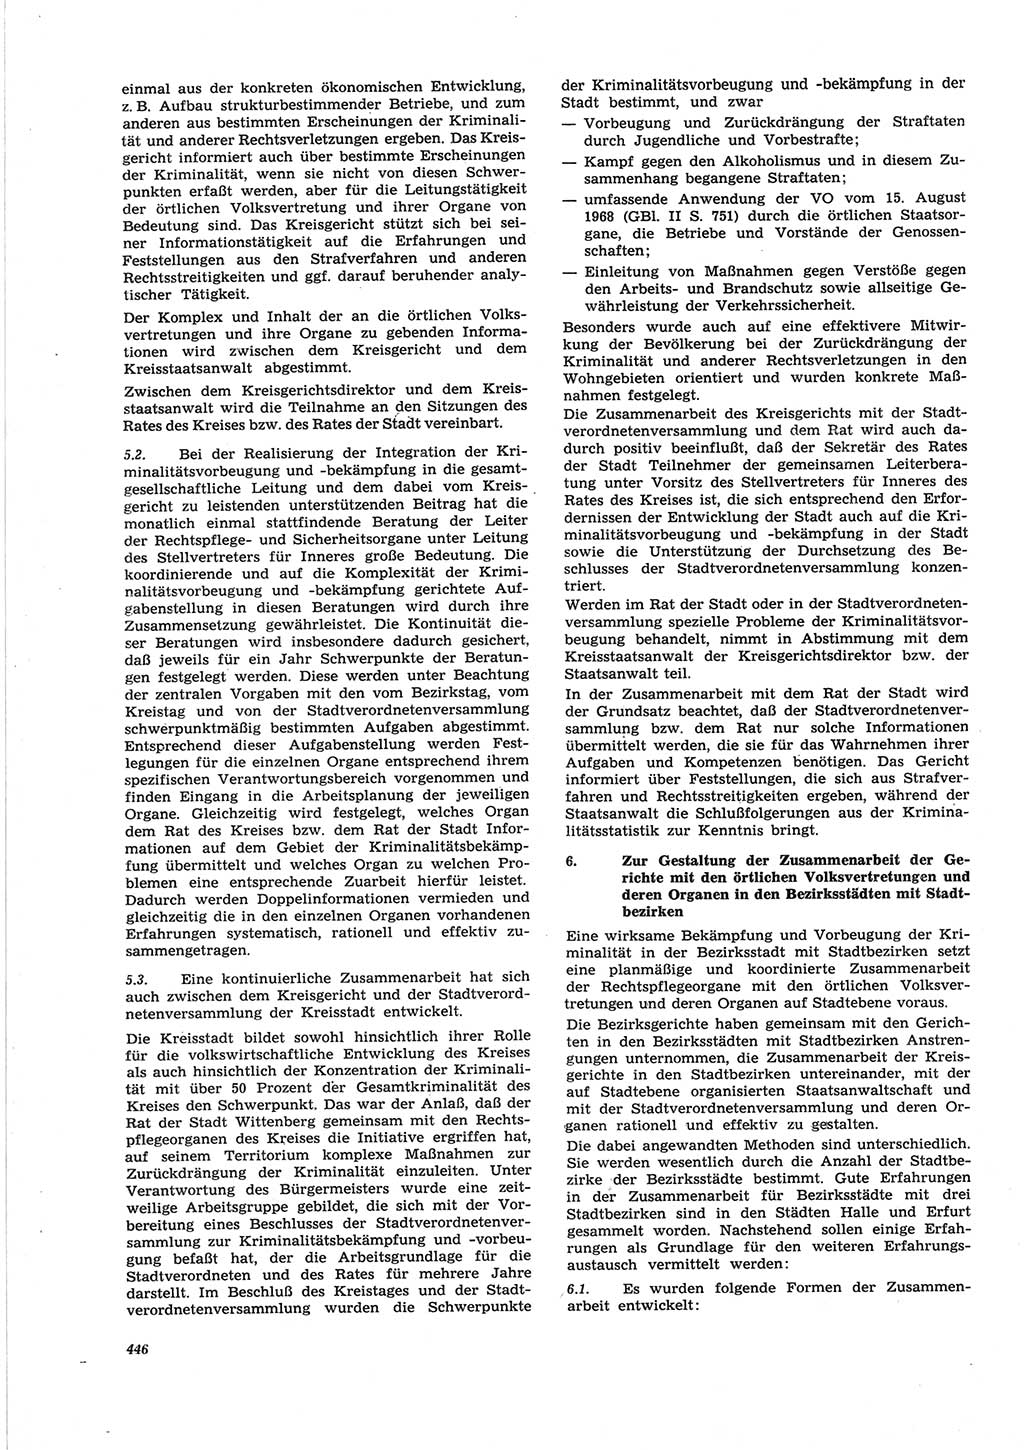 Neue Justiz (NJ), Zeitschrift für Recht und Rechtswissenschaft [Deutsche Demokratische Republik (DDR)], 25. Jahrgang 1971, Seite 446 (NJ DDR 1971, S. 446)